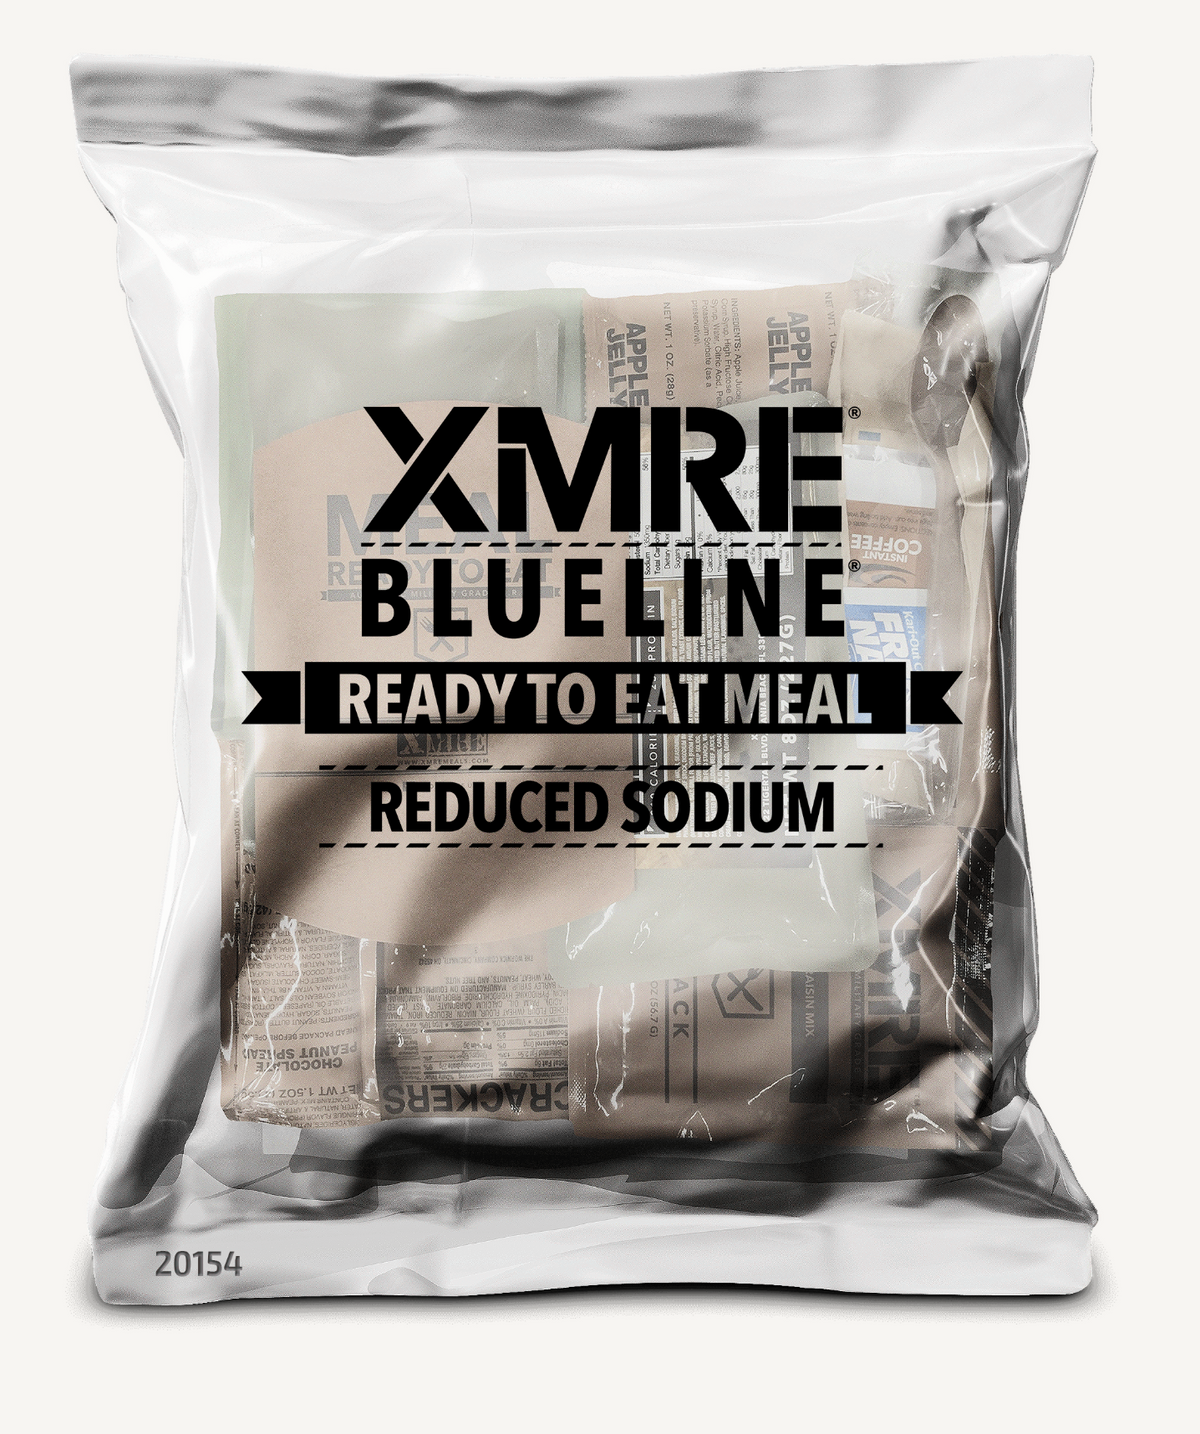 XMRE BLUELINE® - REDUCED SODIUM CASE OF 15 FRH